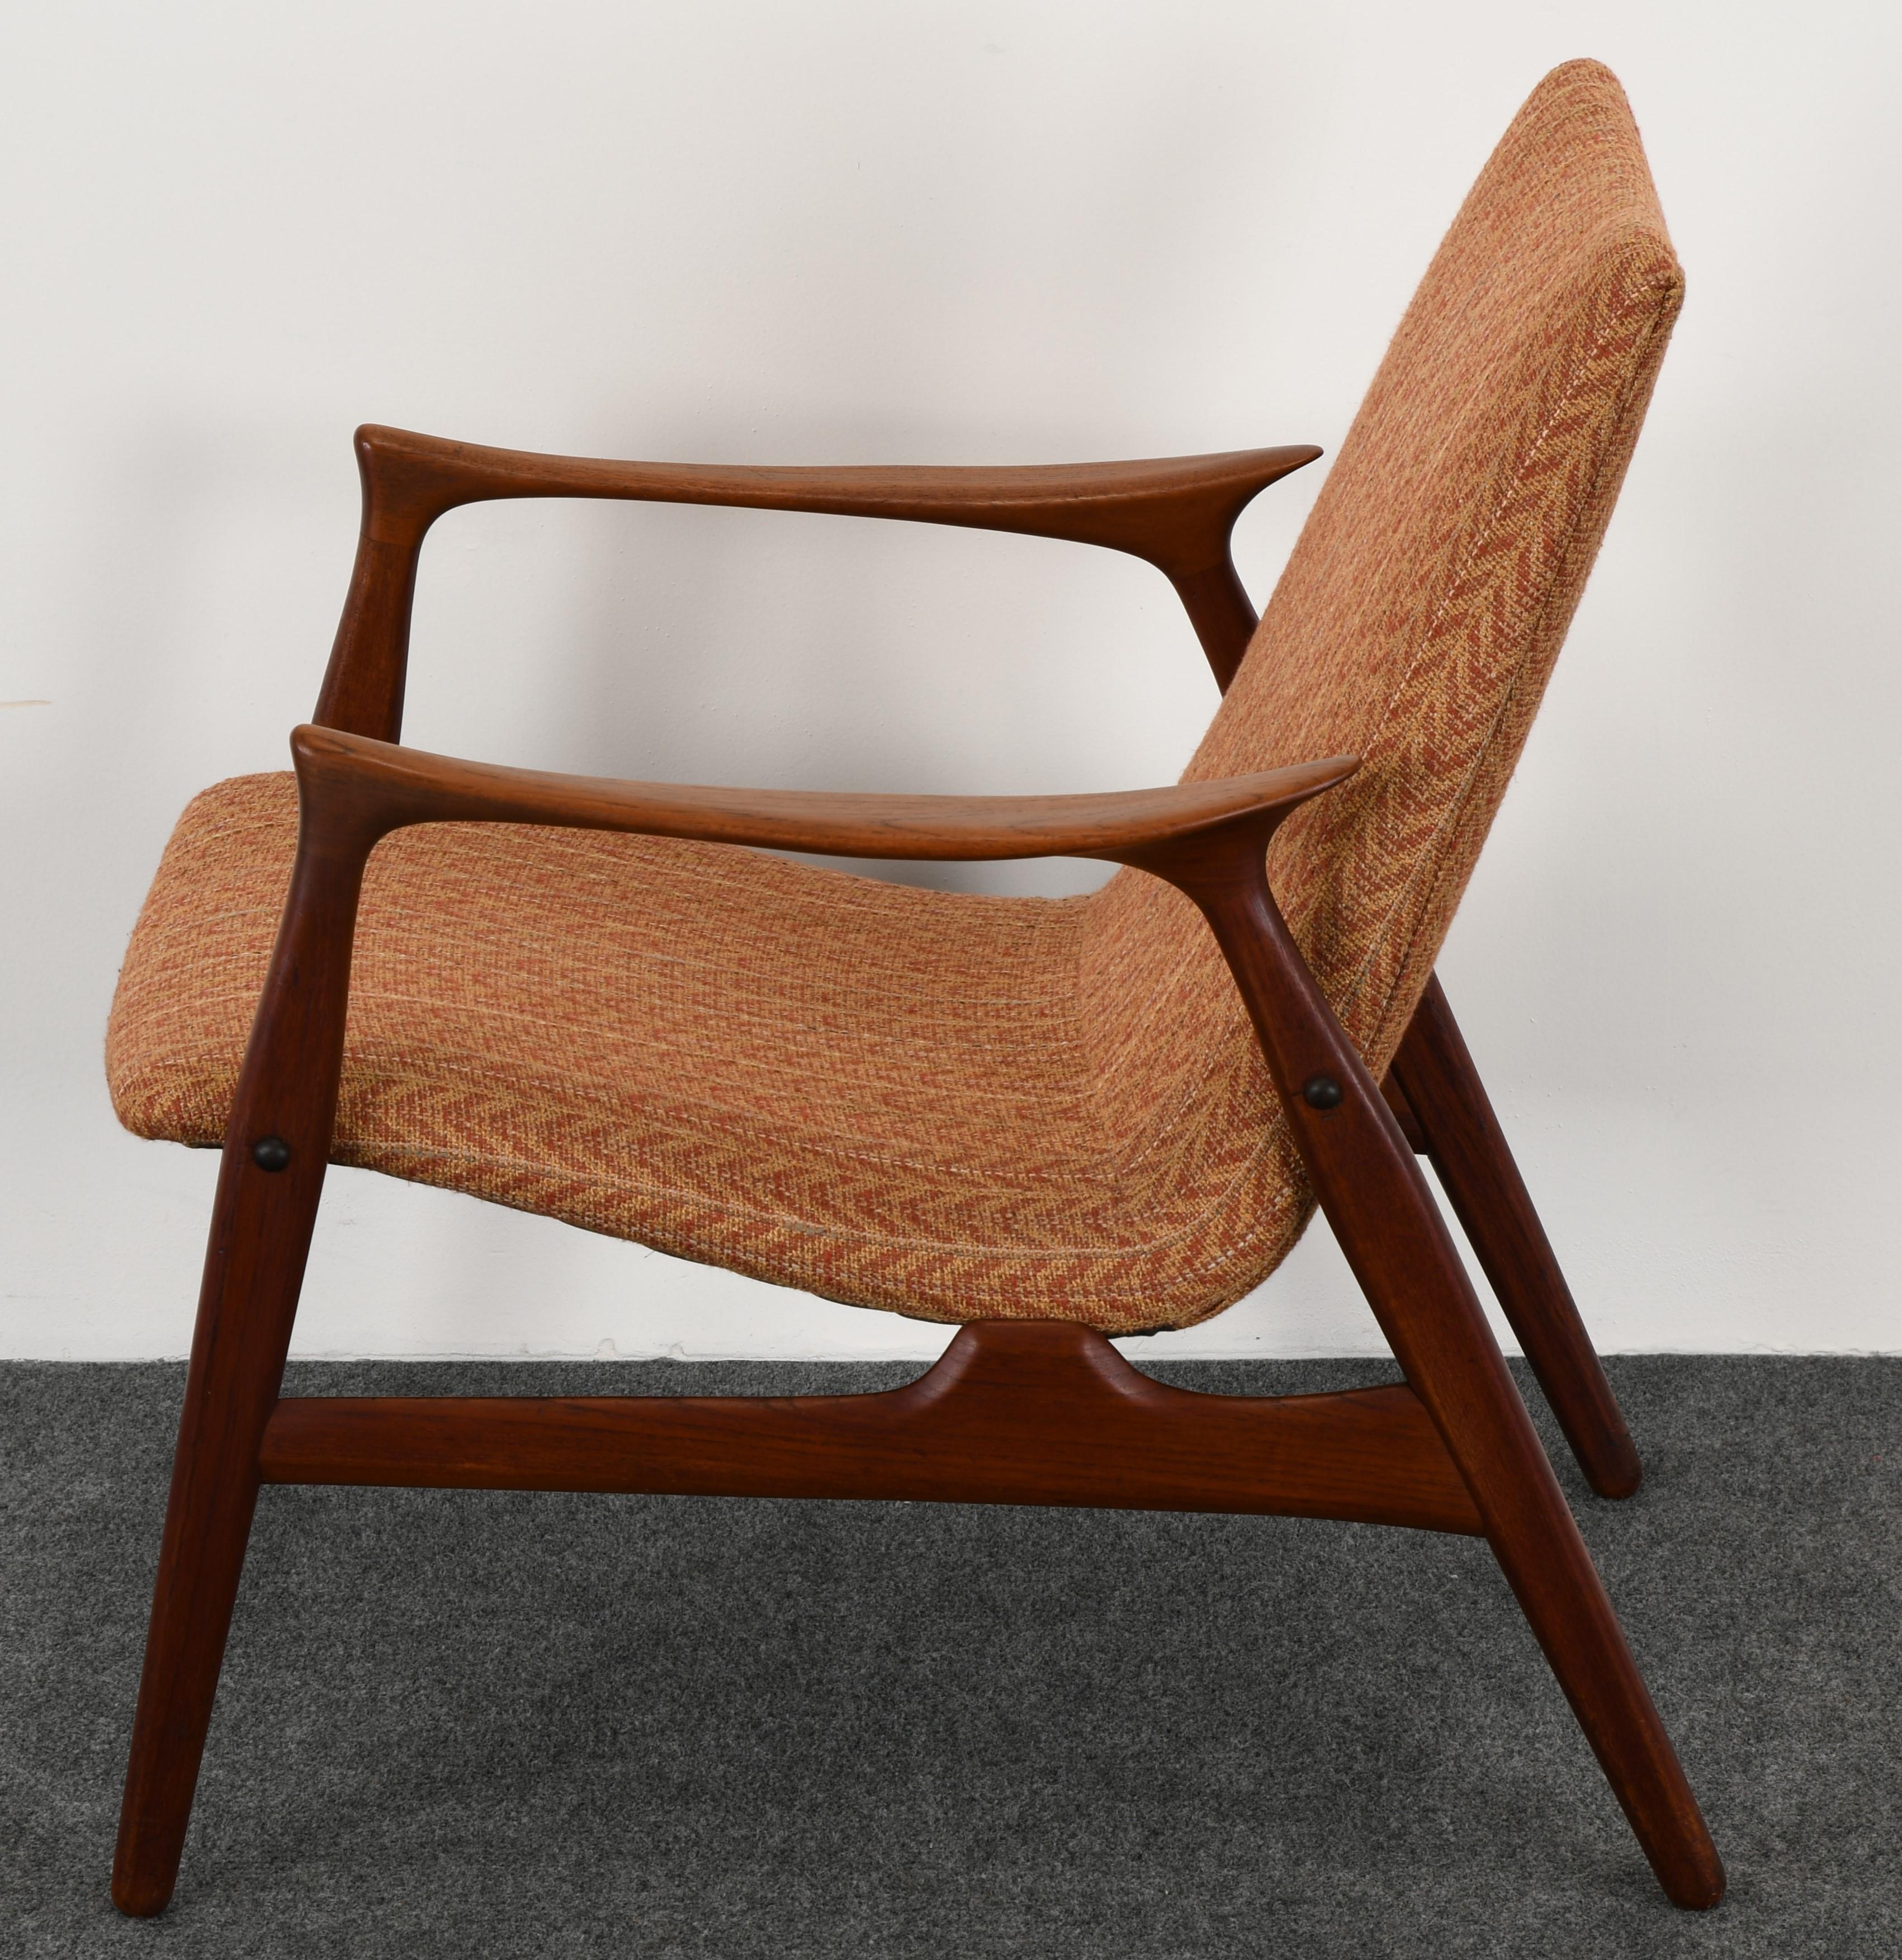 Mid-20th Century Easy Chair by Arne Hovmand-Olsen for Mogens Kold, 1958